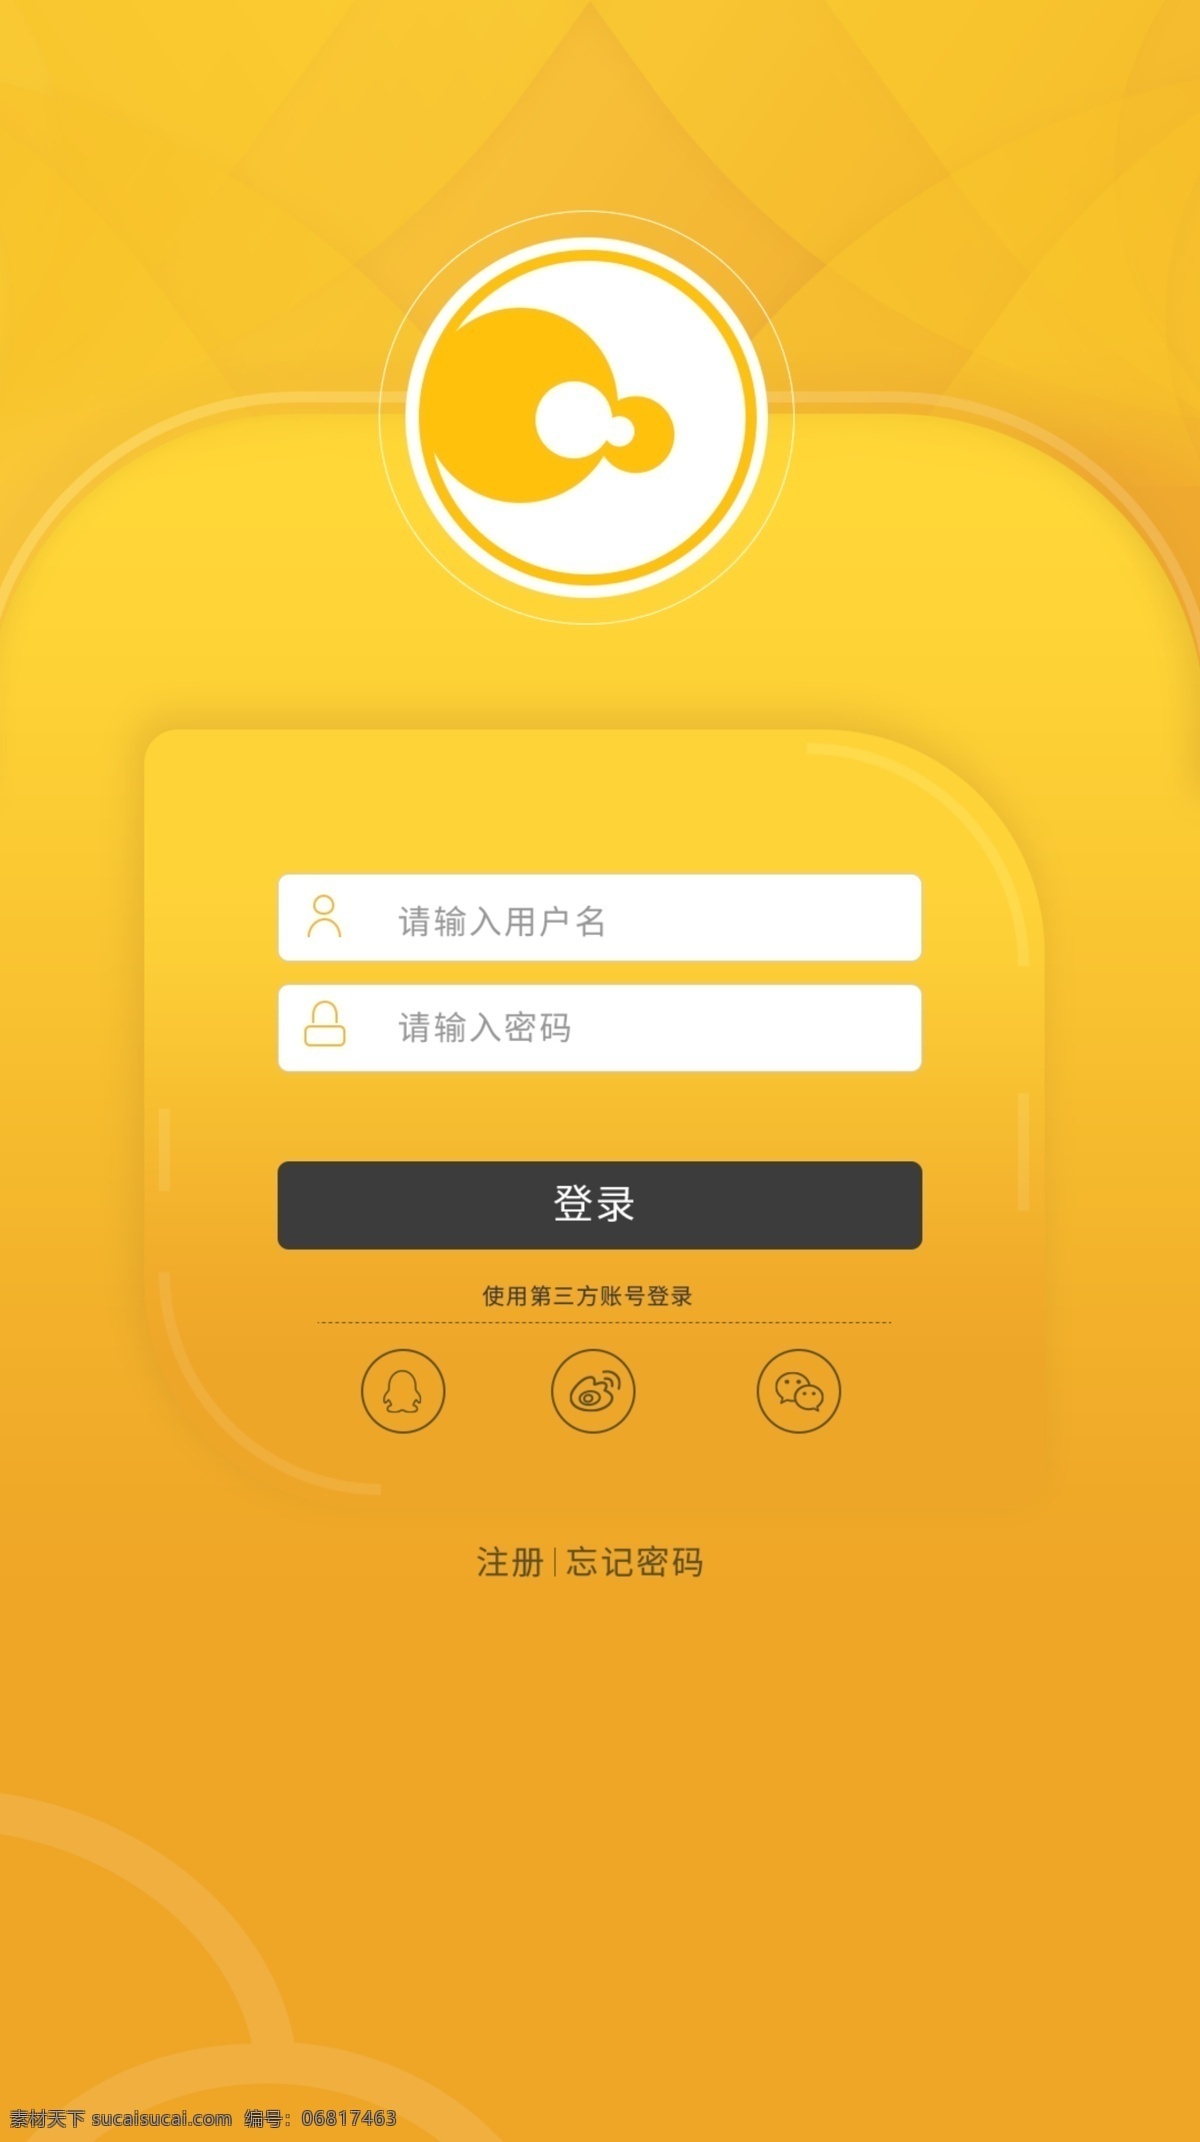 黄色 背景 主题 登录 黄色主题 注册登录界面 app界面 黄色底纹